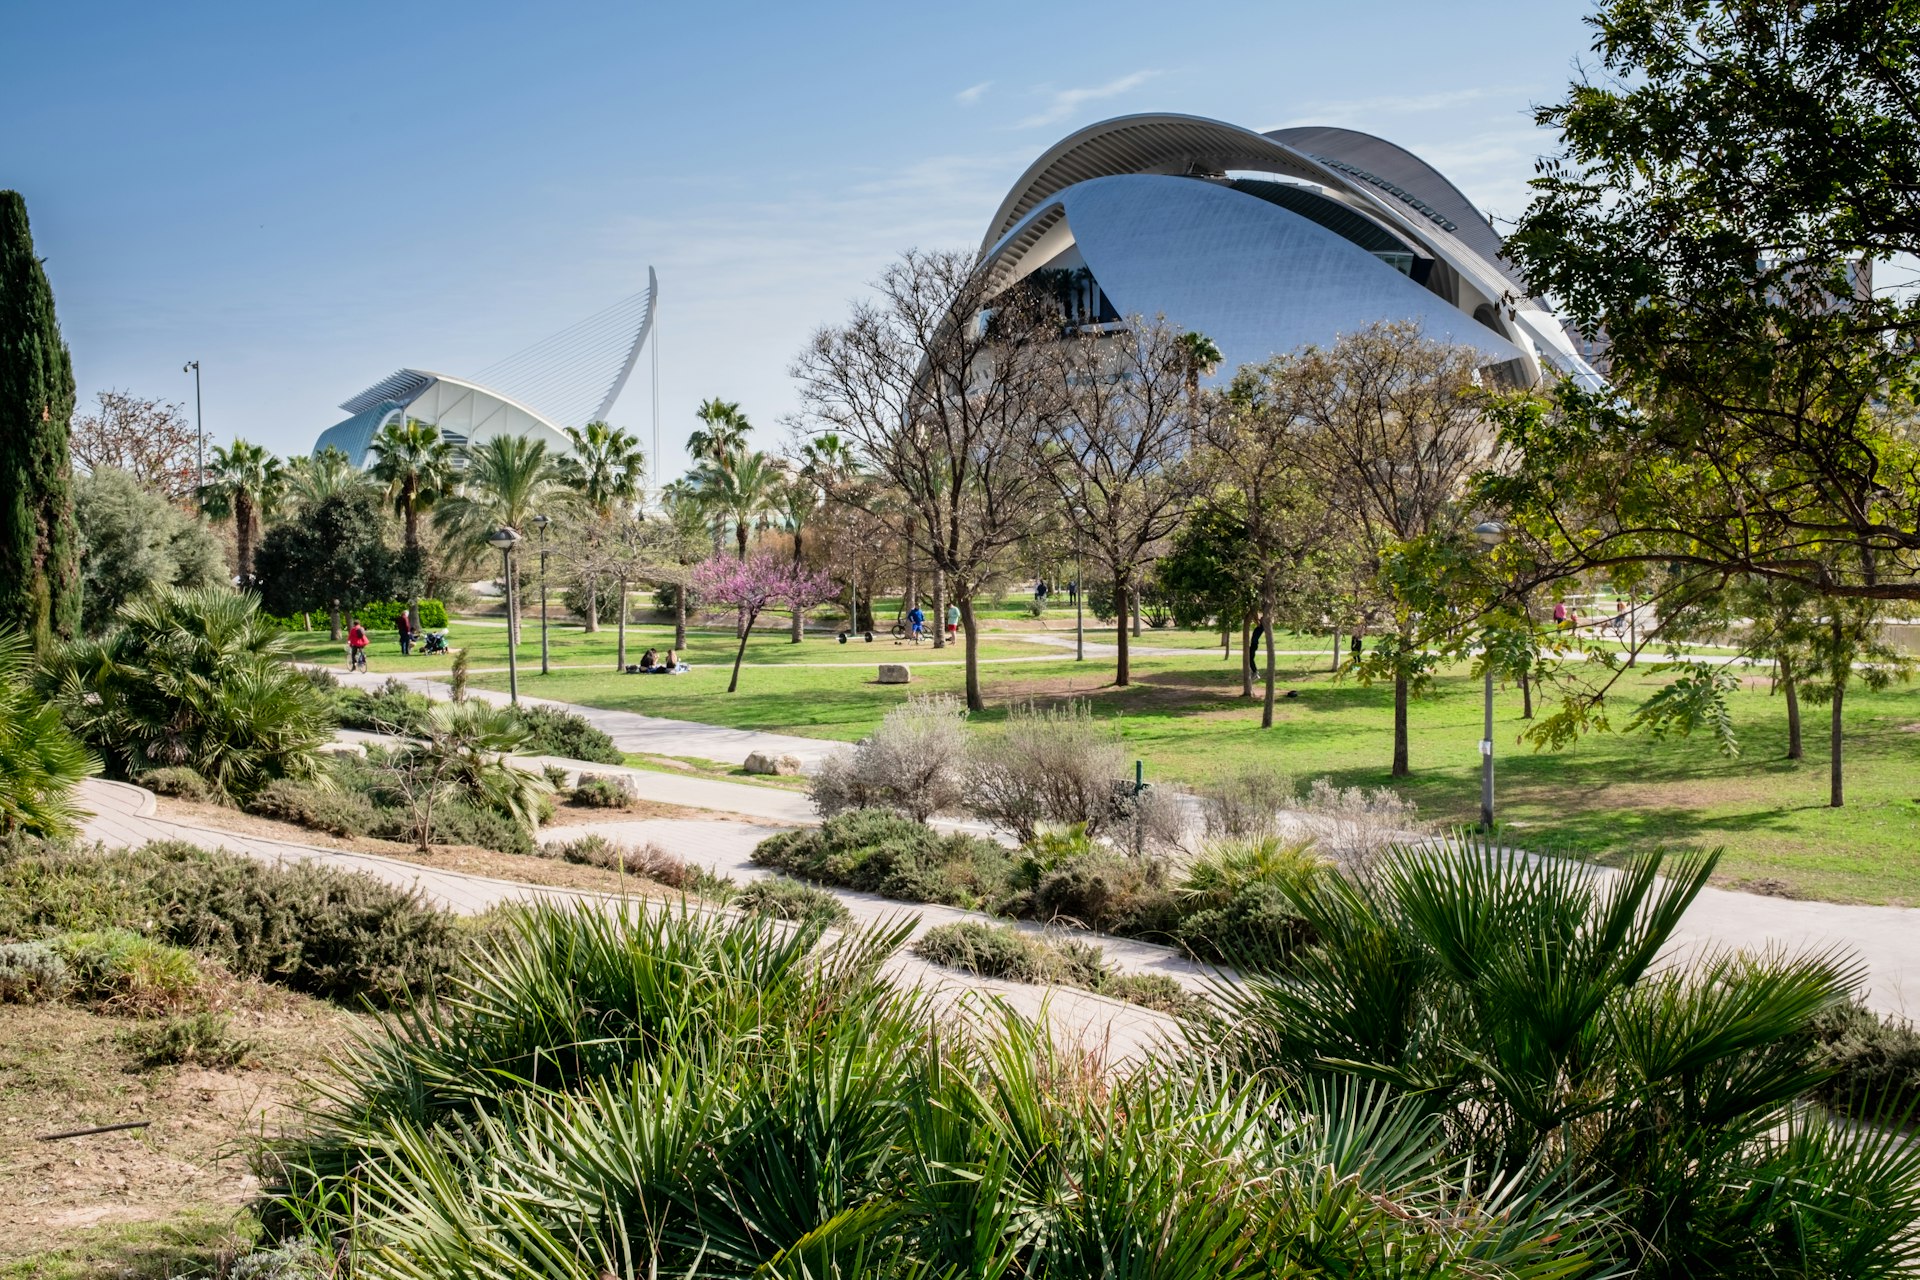 O Jardí del Túria (jardins de Túria), um parque público com ciclovias, caminhos pedonais, instalações desportivas e a futurística Cidade das Artes e das Ciências ao fundo. 